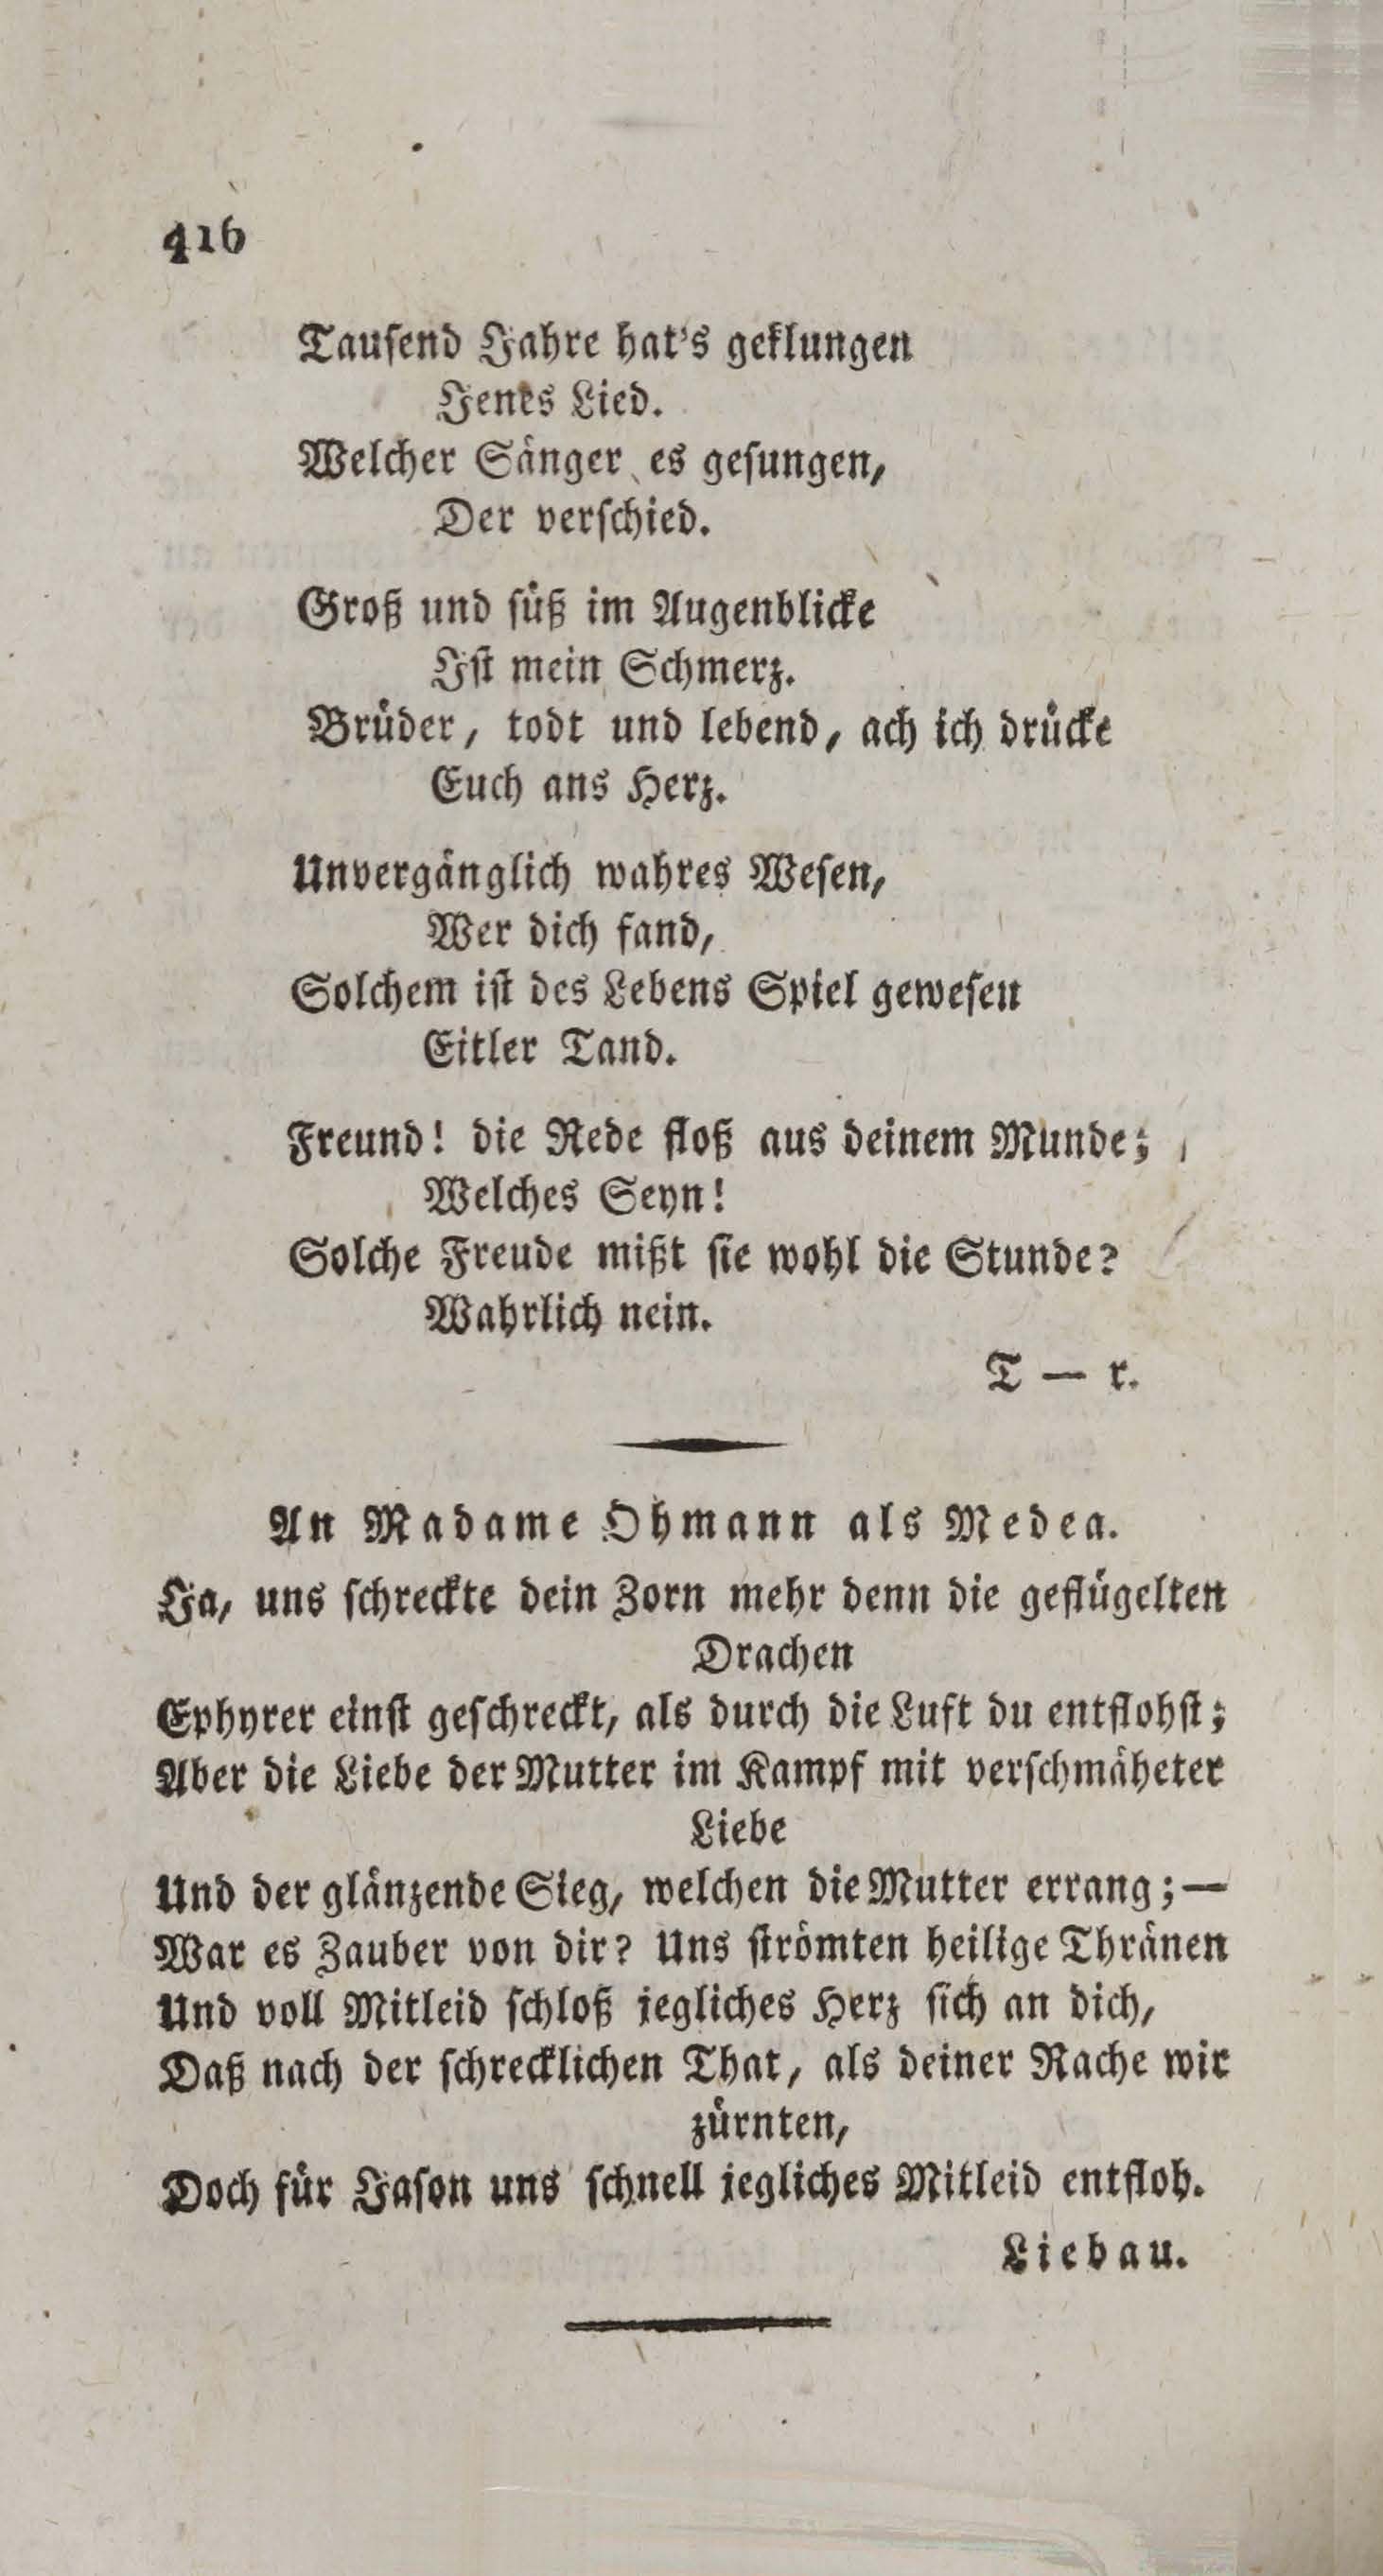 Wöchentliche Unterhaltungen [3] (1806) | 424. (416) Main body of text